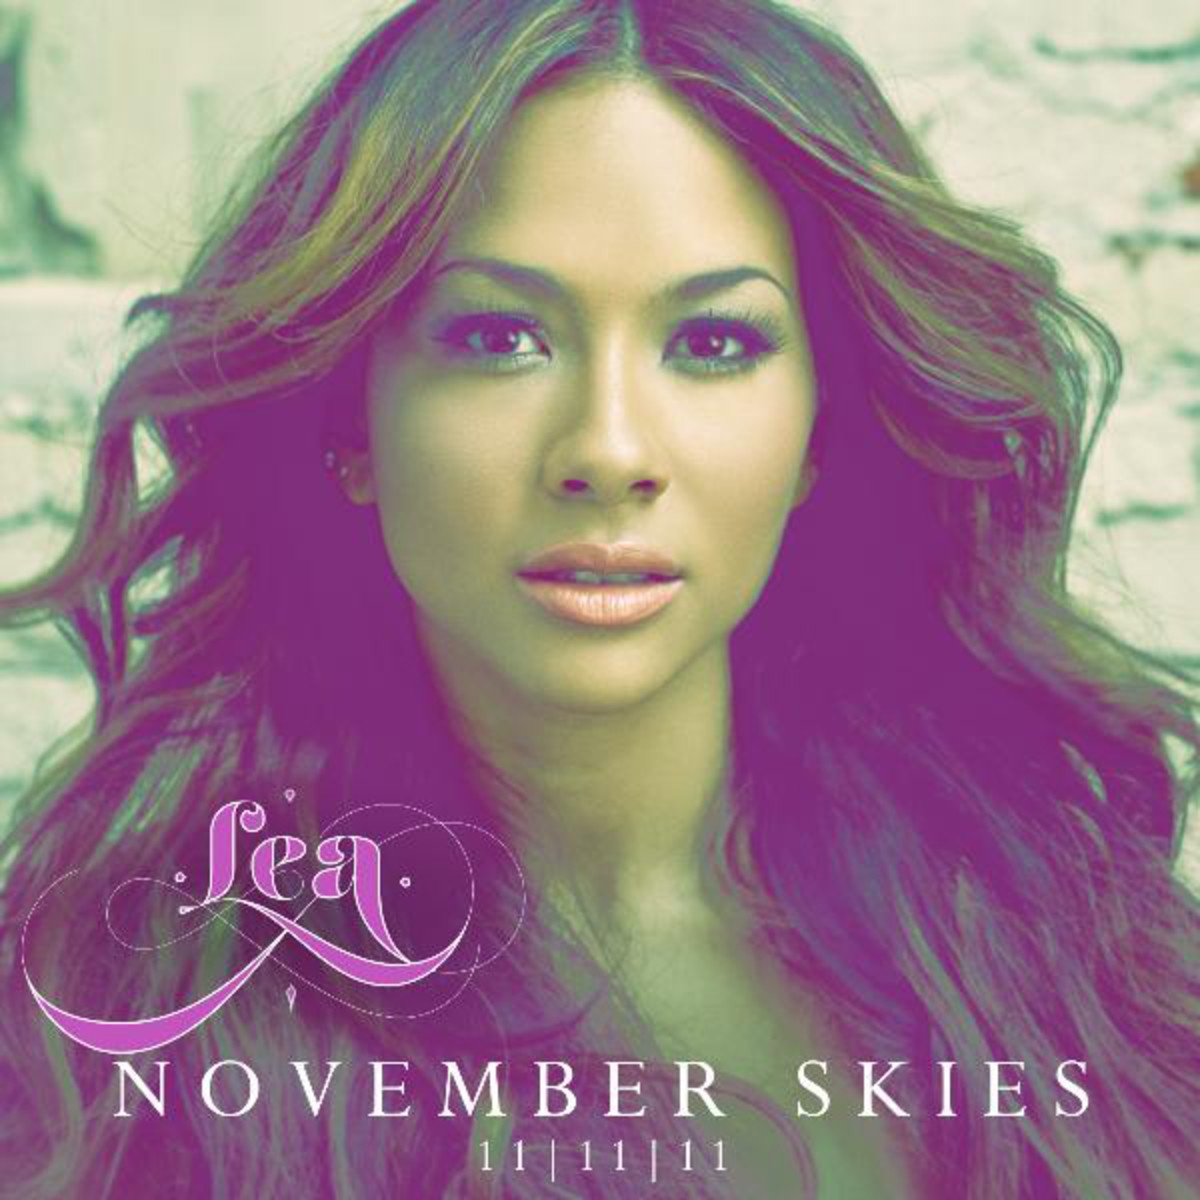 November Skies(11-11-11)